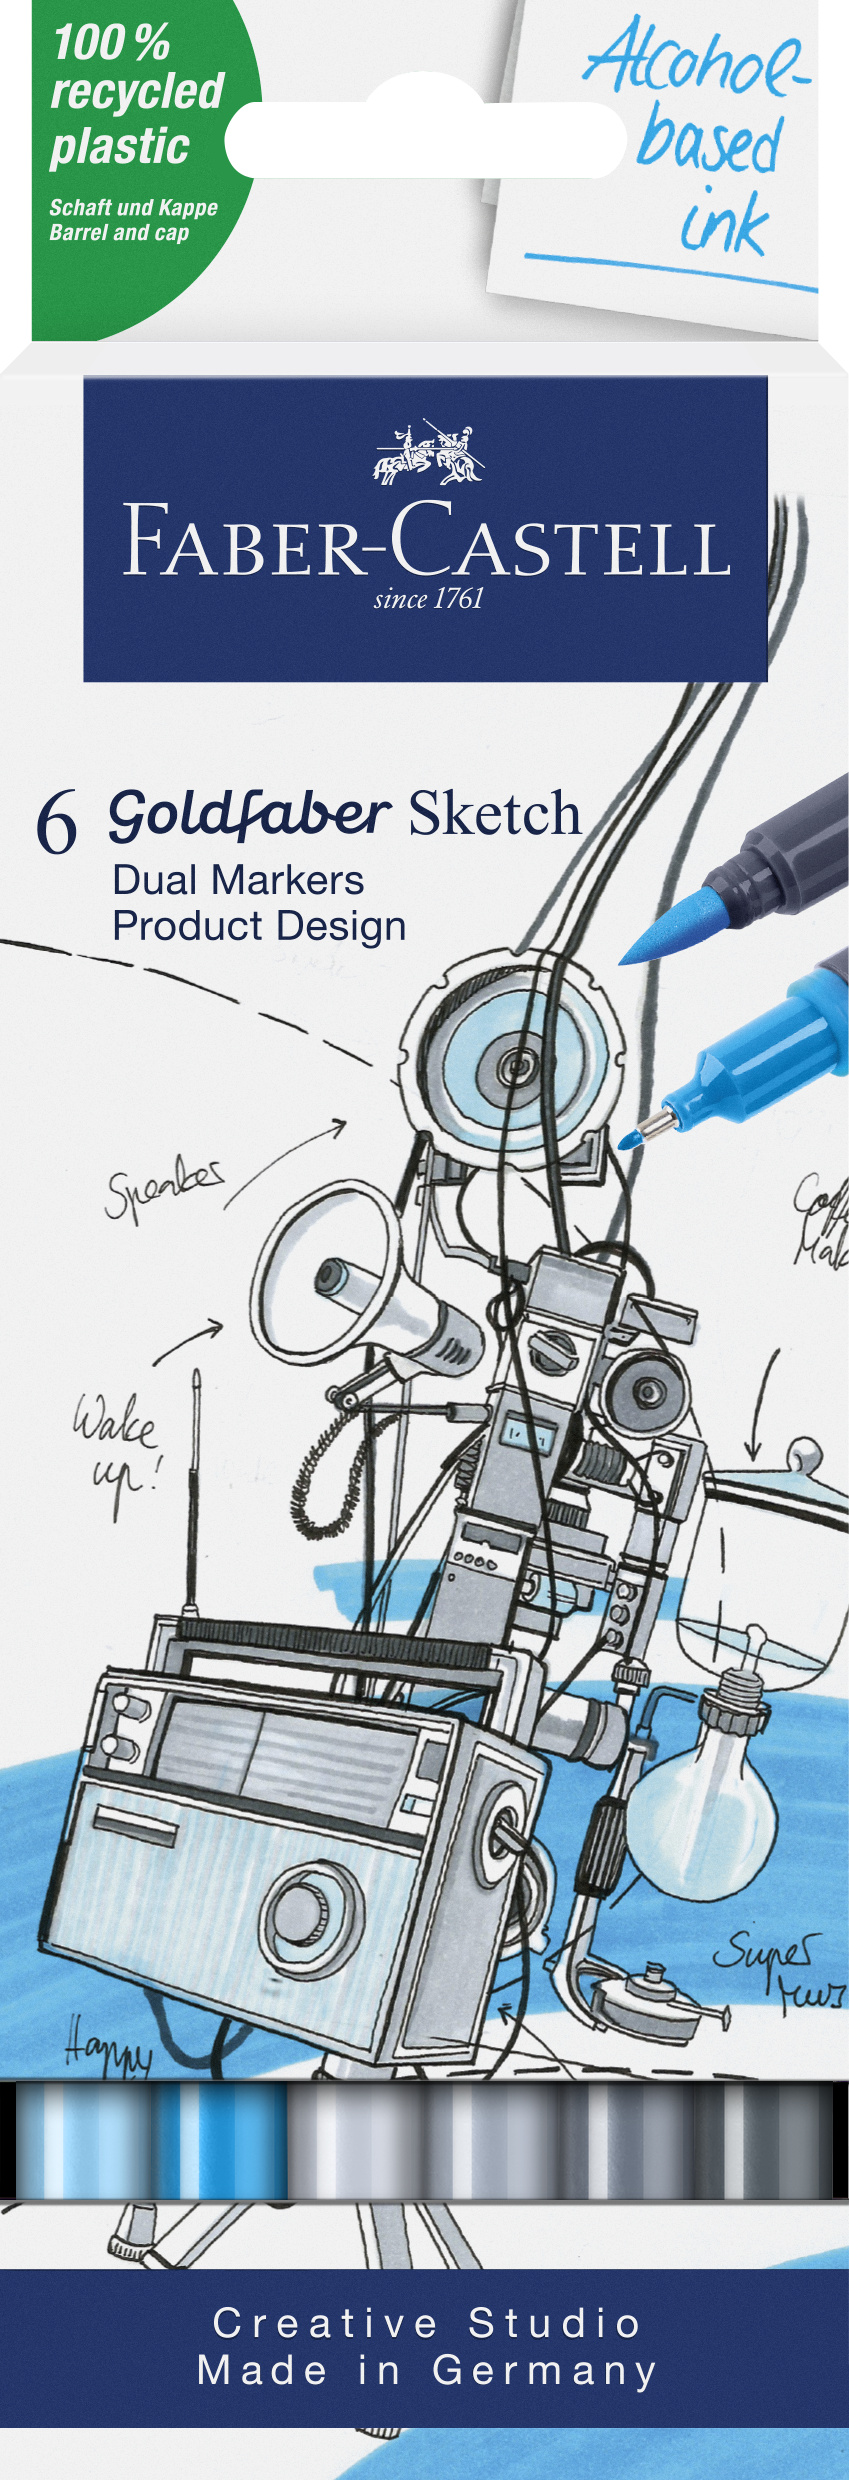 Faber-Castell_Goldfaber Sketch Marker, 6er set, Product design_EUR 18,00